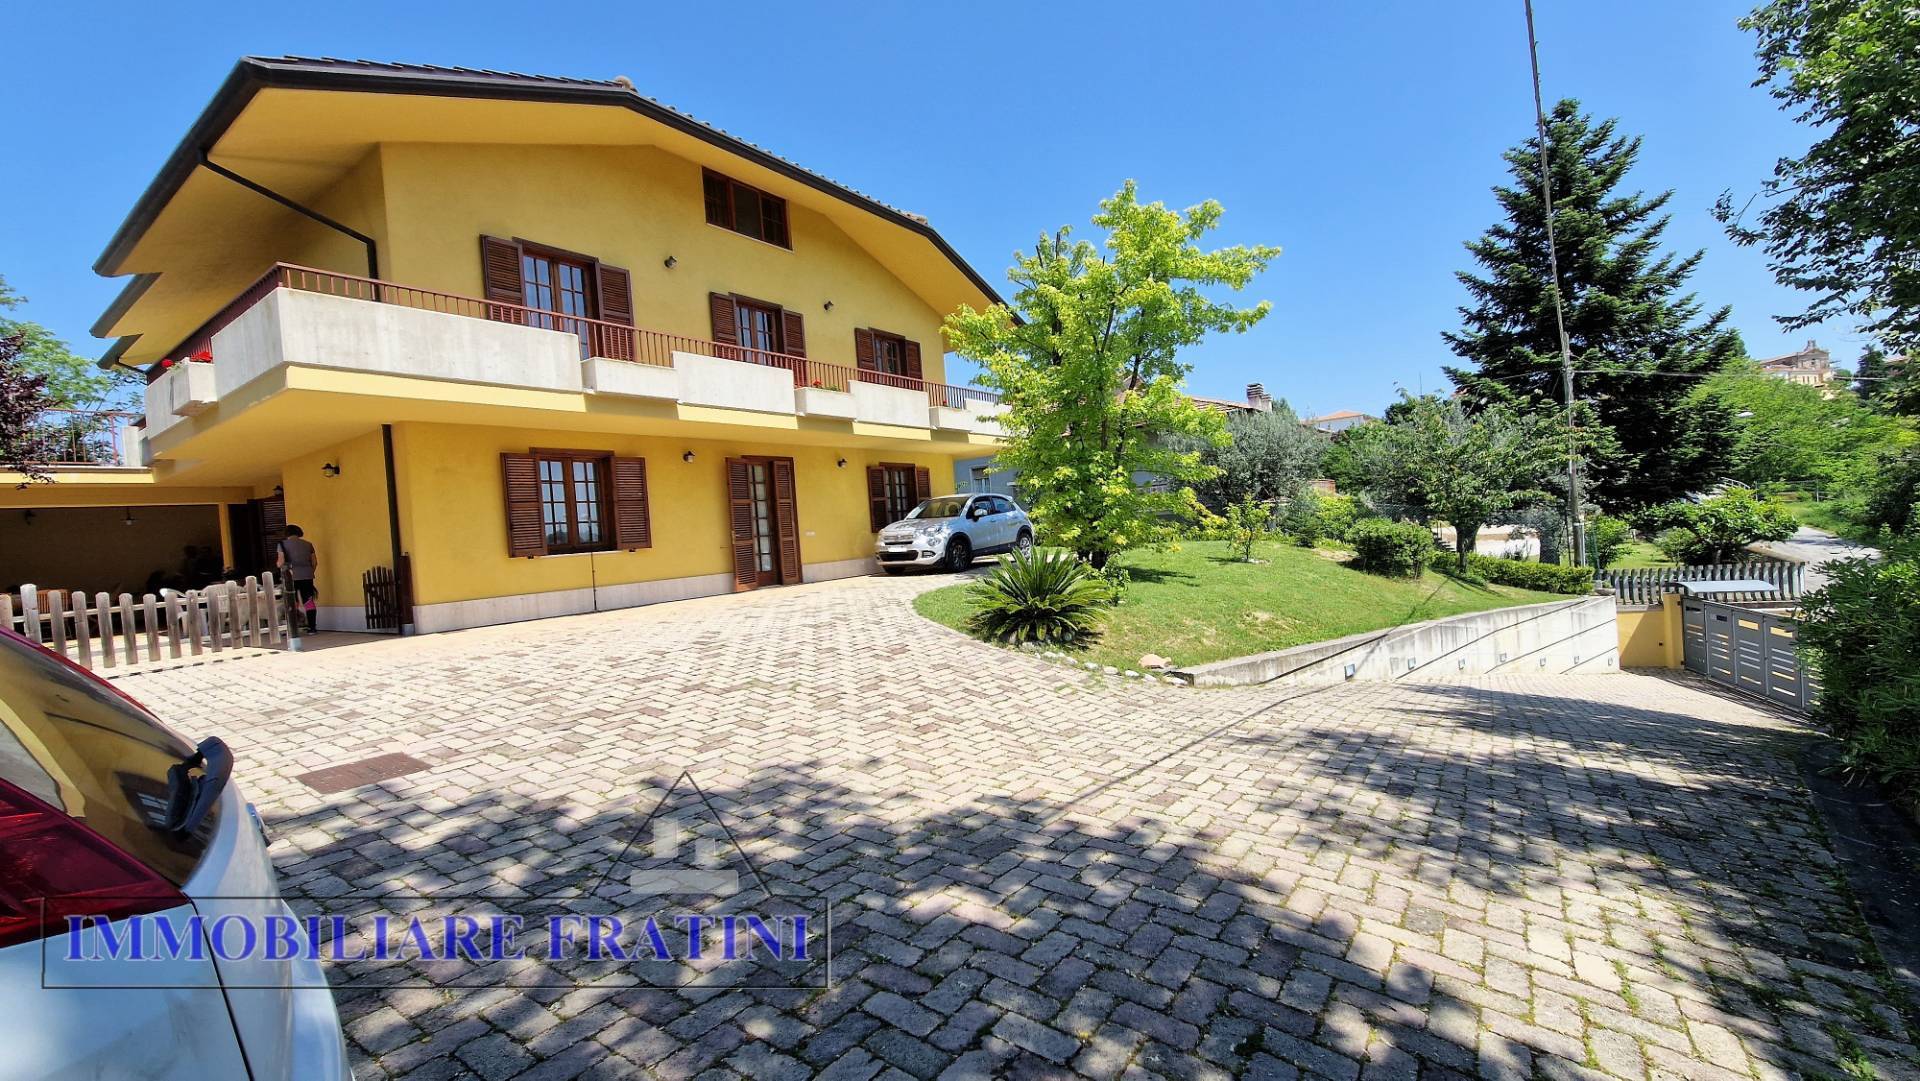 Villa Bifamiliare in vendita a Sant'Omero, 9 locali, prezzo € 380.000 | PortaleAgenzieImmobiliari.it